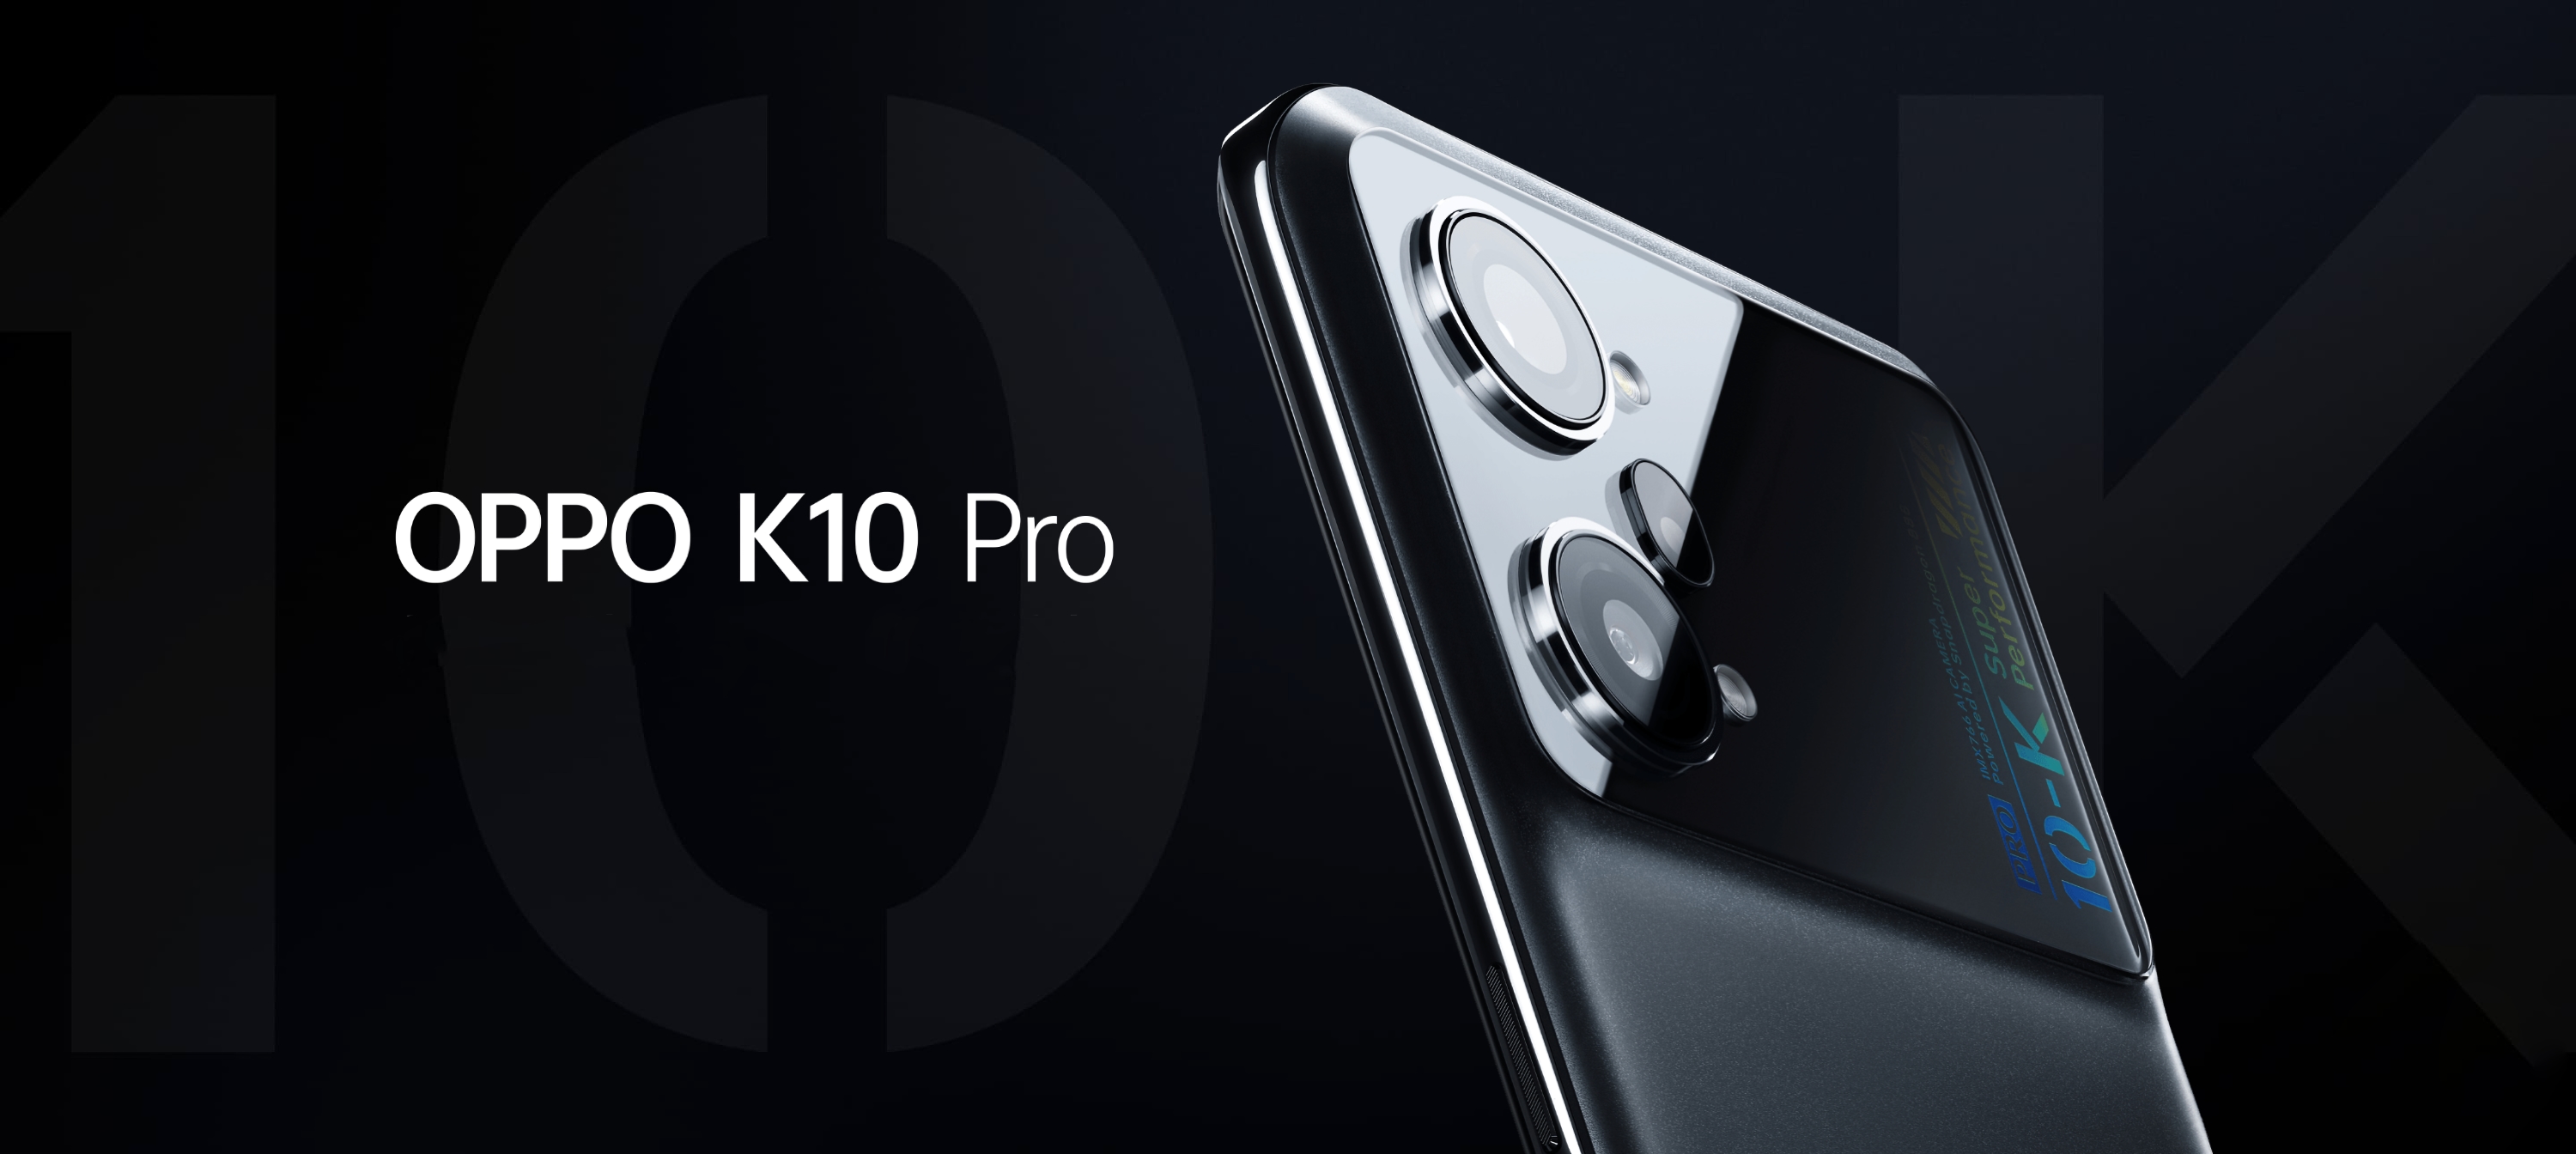 OPPO K10 Pro: pantalla AMOLED de 120Hz, chip Snapdragon 888, triple cámara de 50MP y carga rápida de 80W por $385